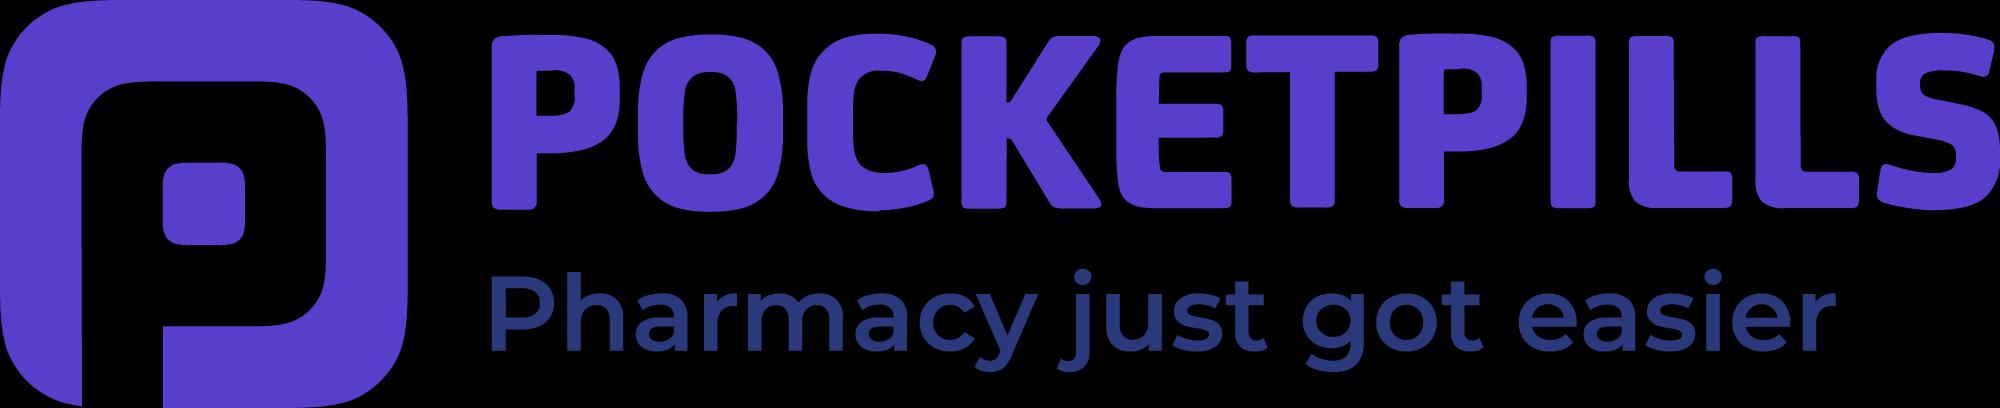 PocketPills_logo